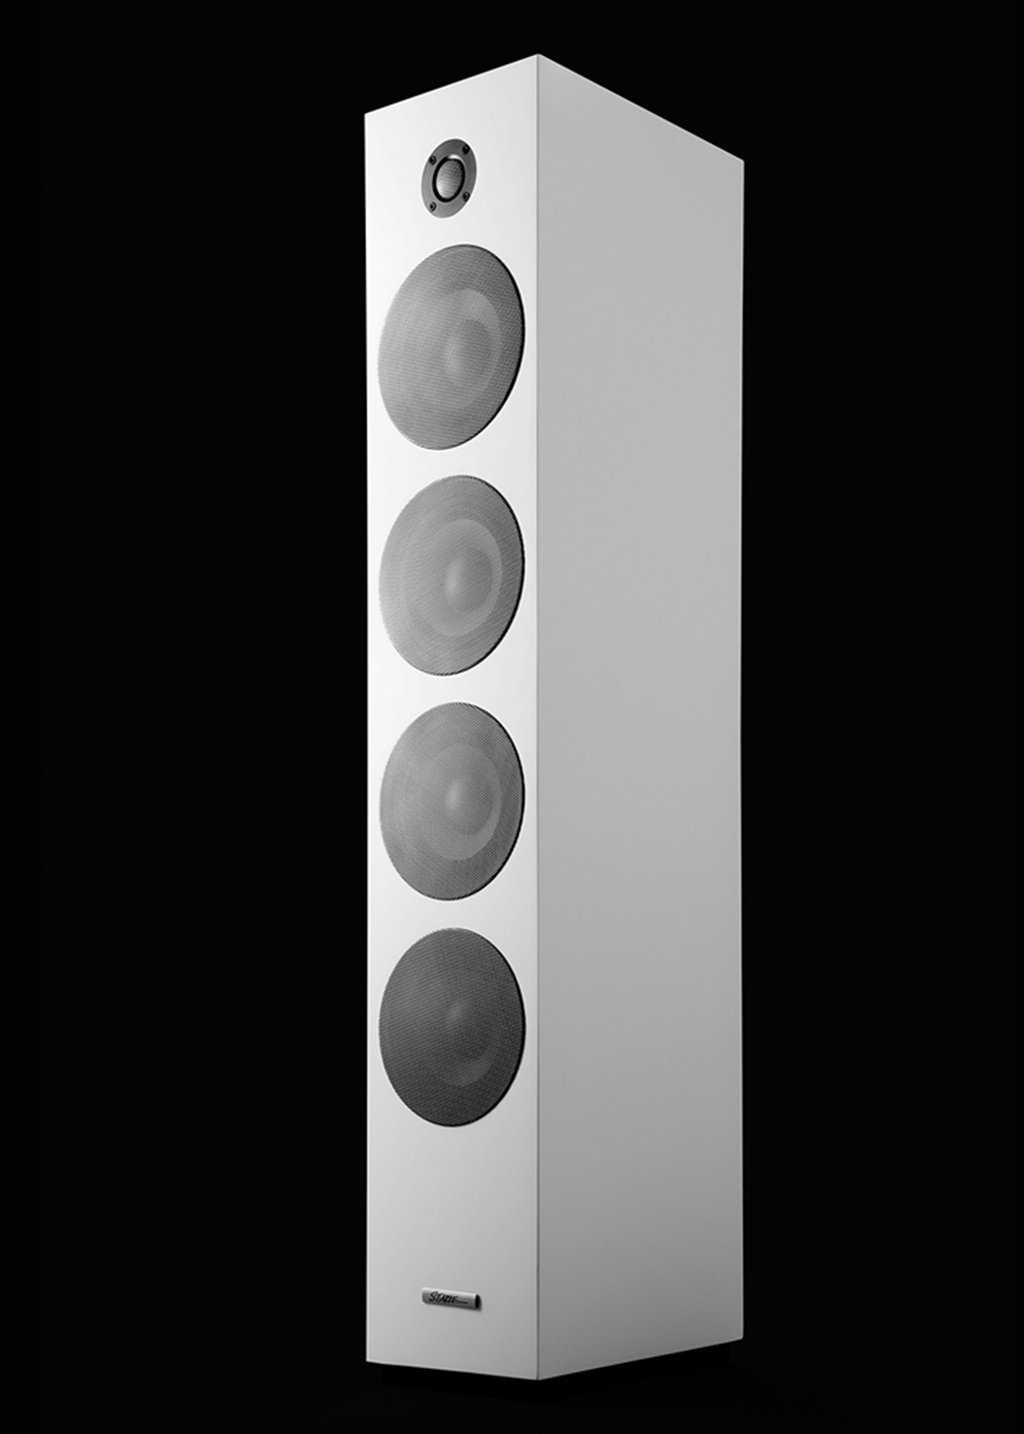 Starke sound V64 speakers up to 60% off MSRP $599